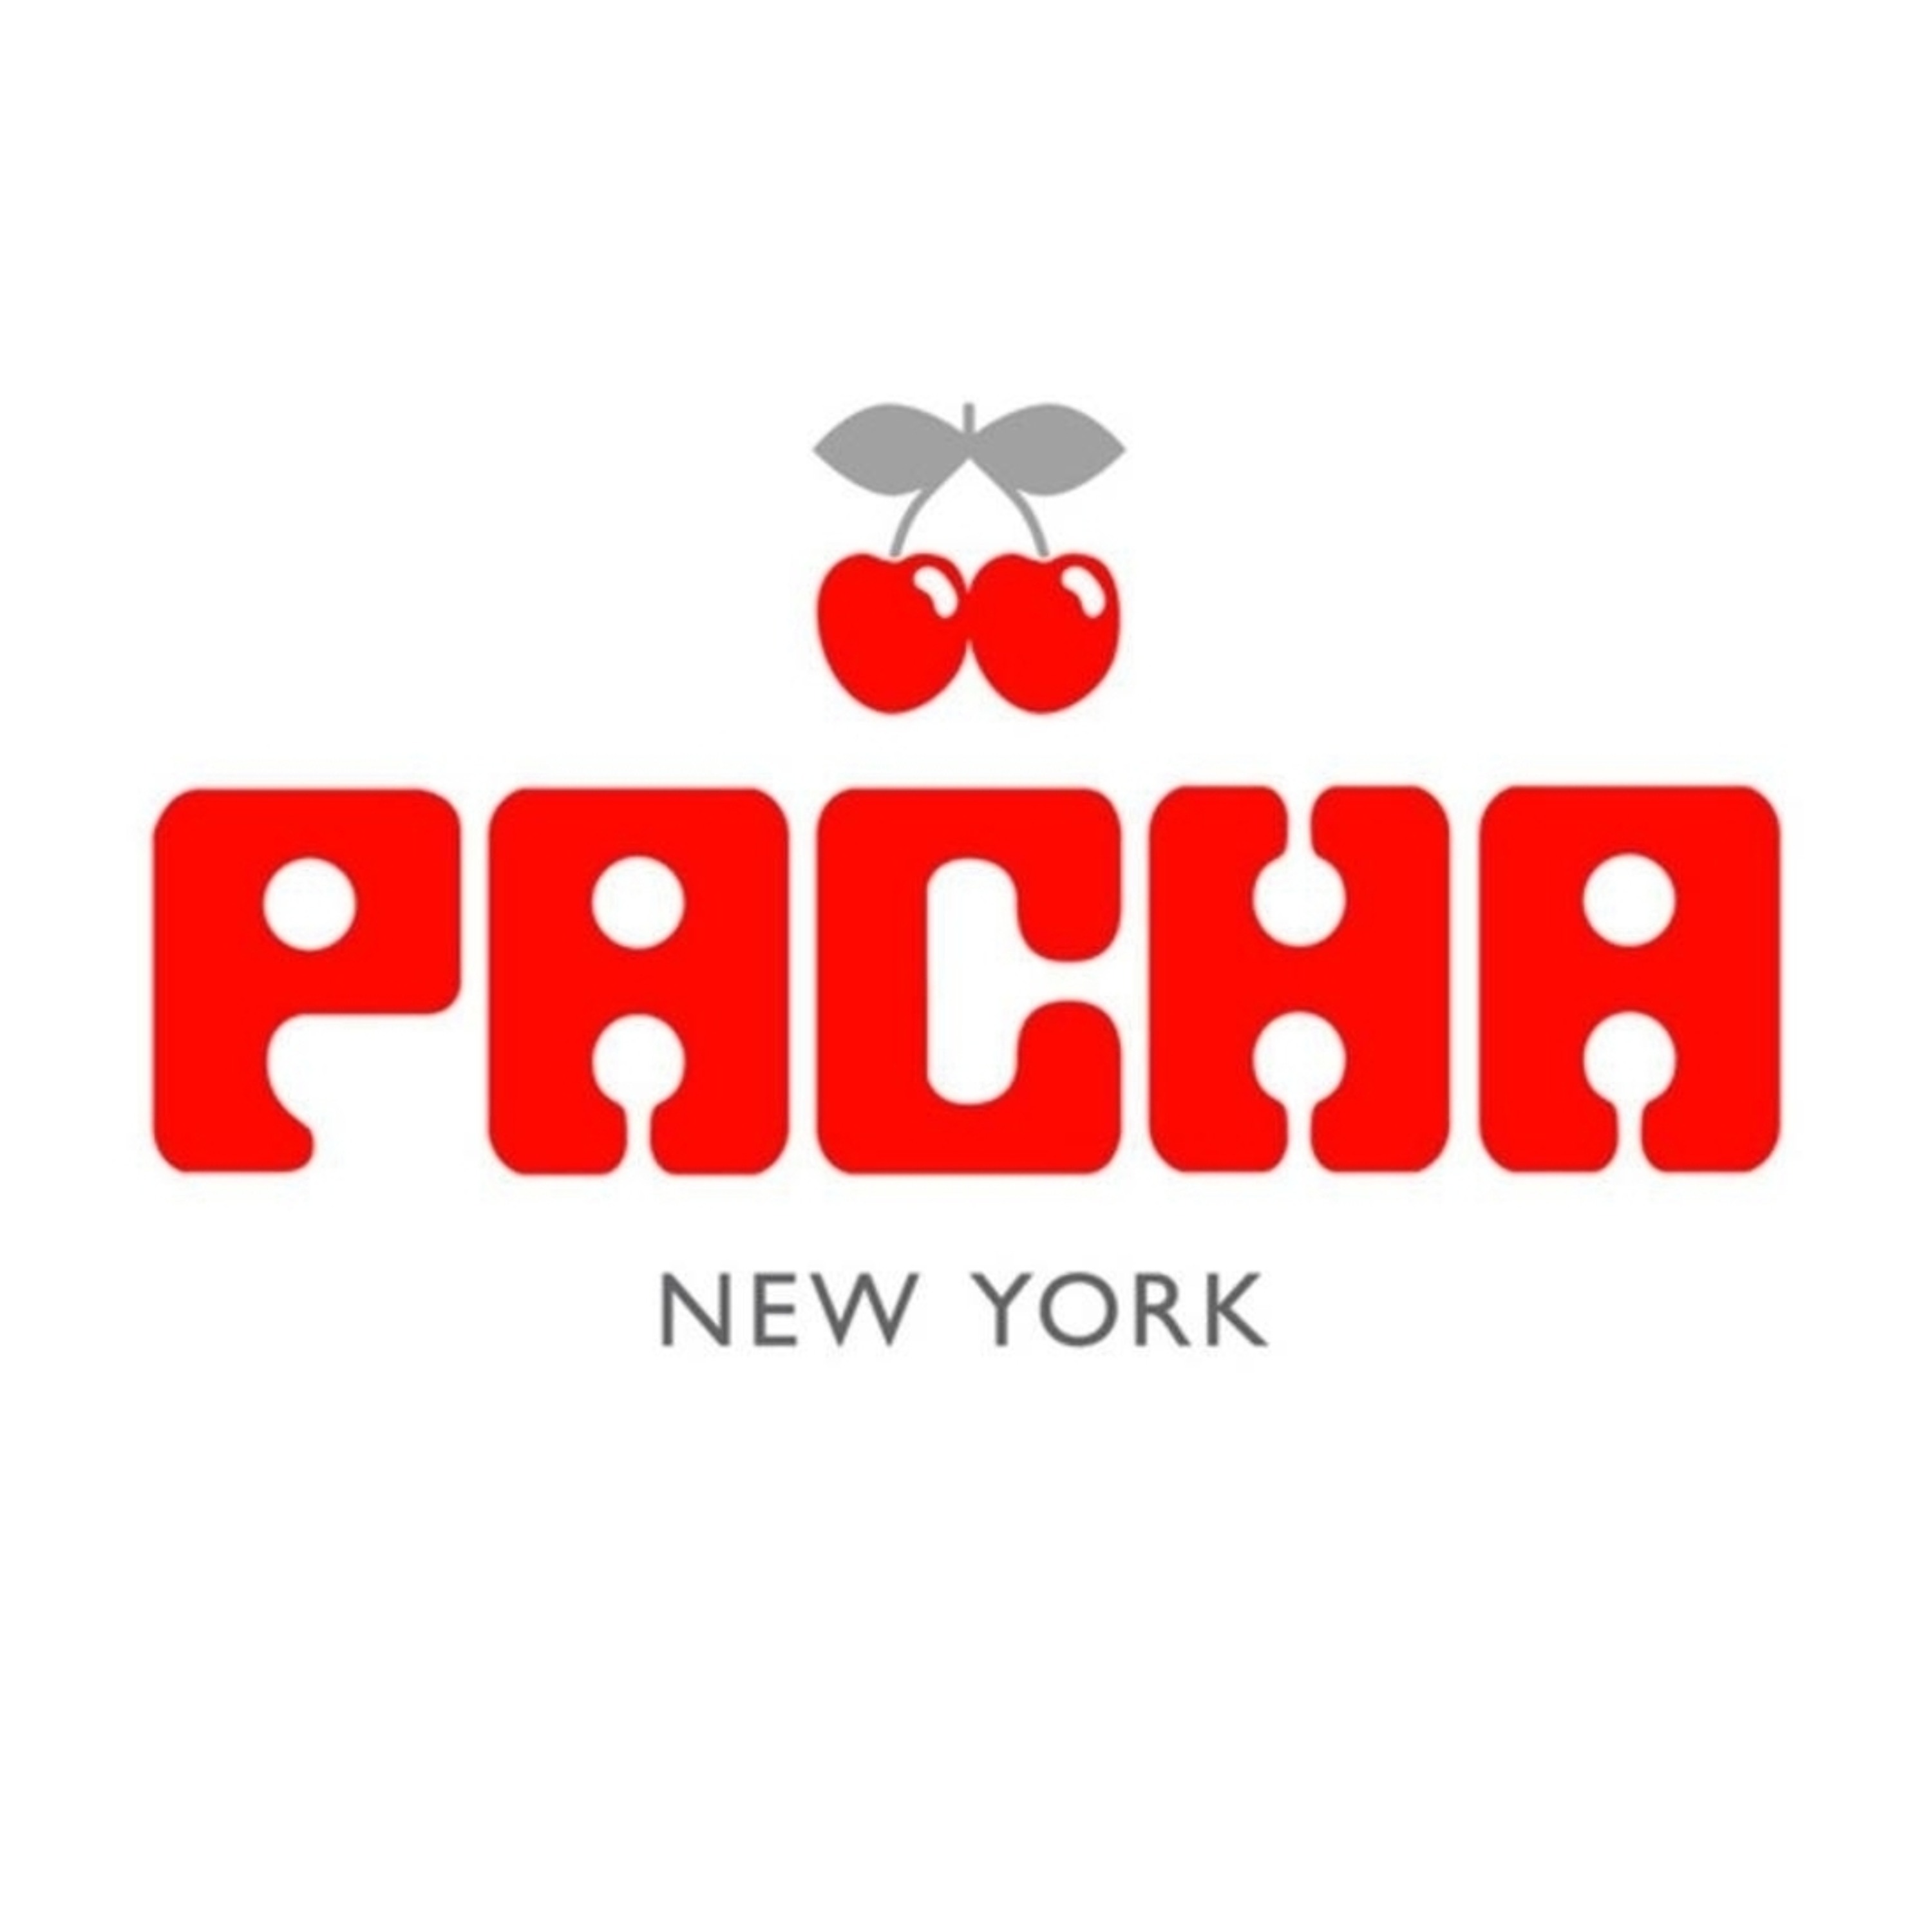 PACHA NEW YORK